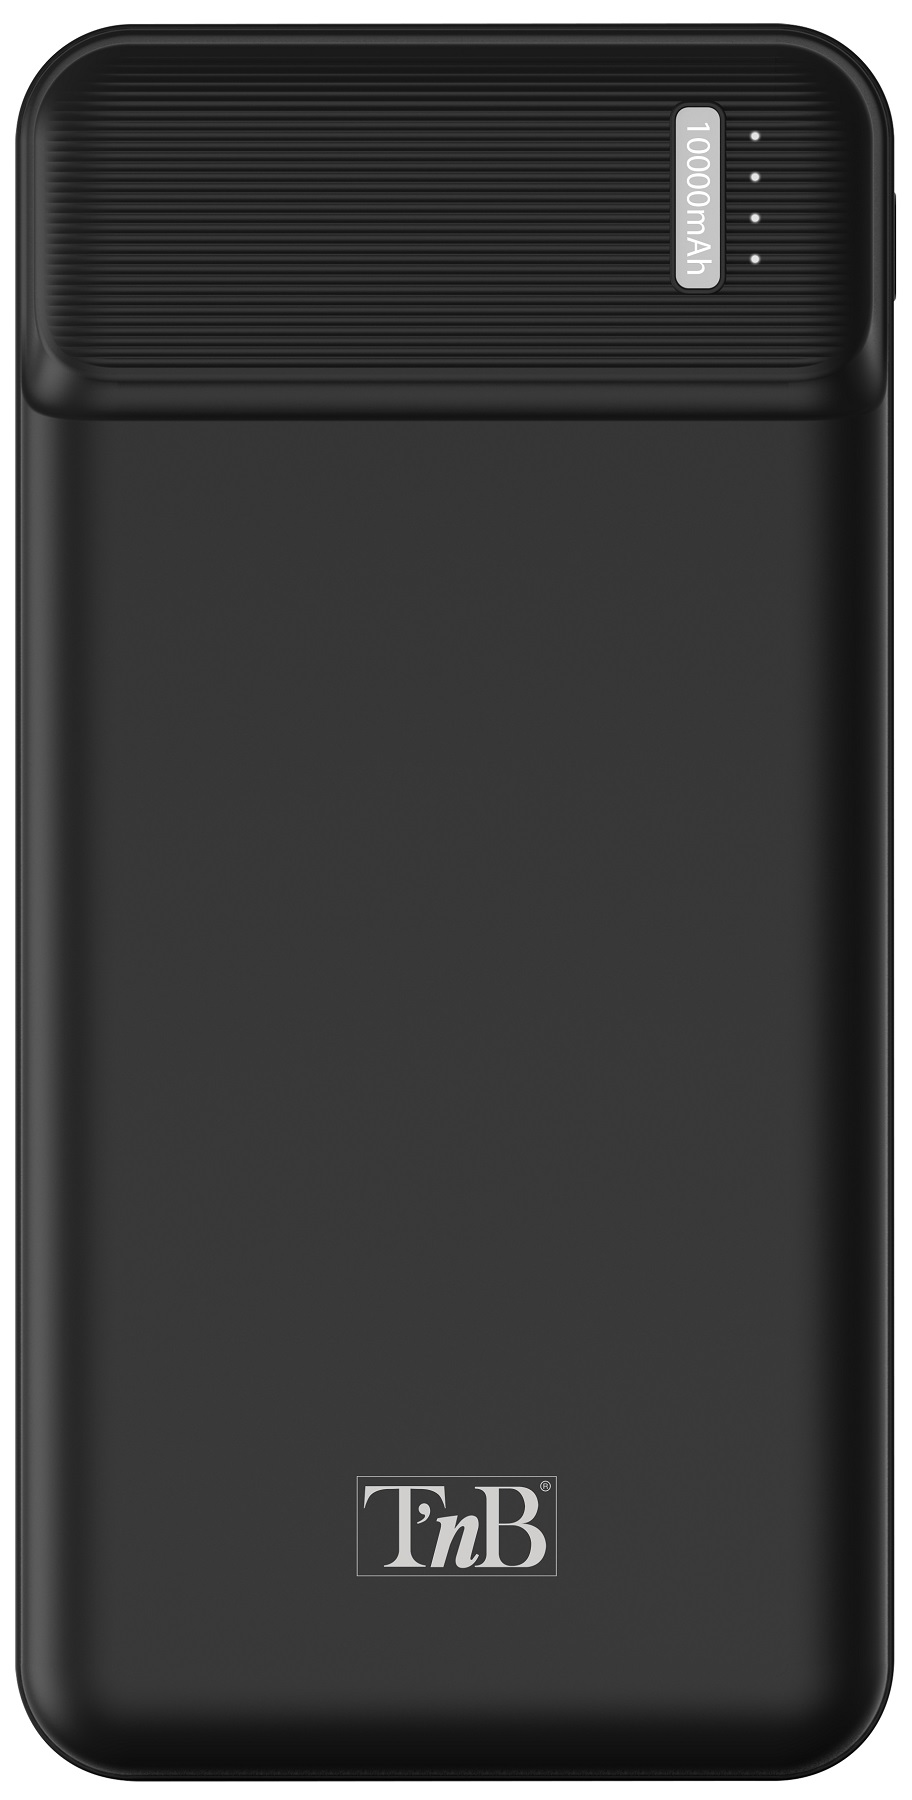 Универсальная мобильная батарея TNB 10000mAh 10W Black (PBU10000) в Киеве